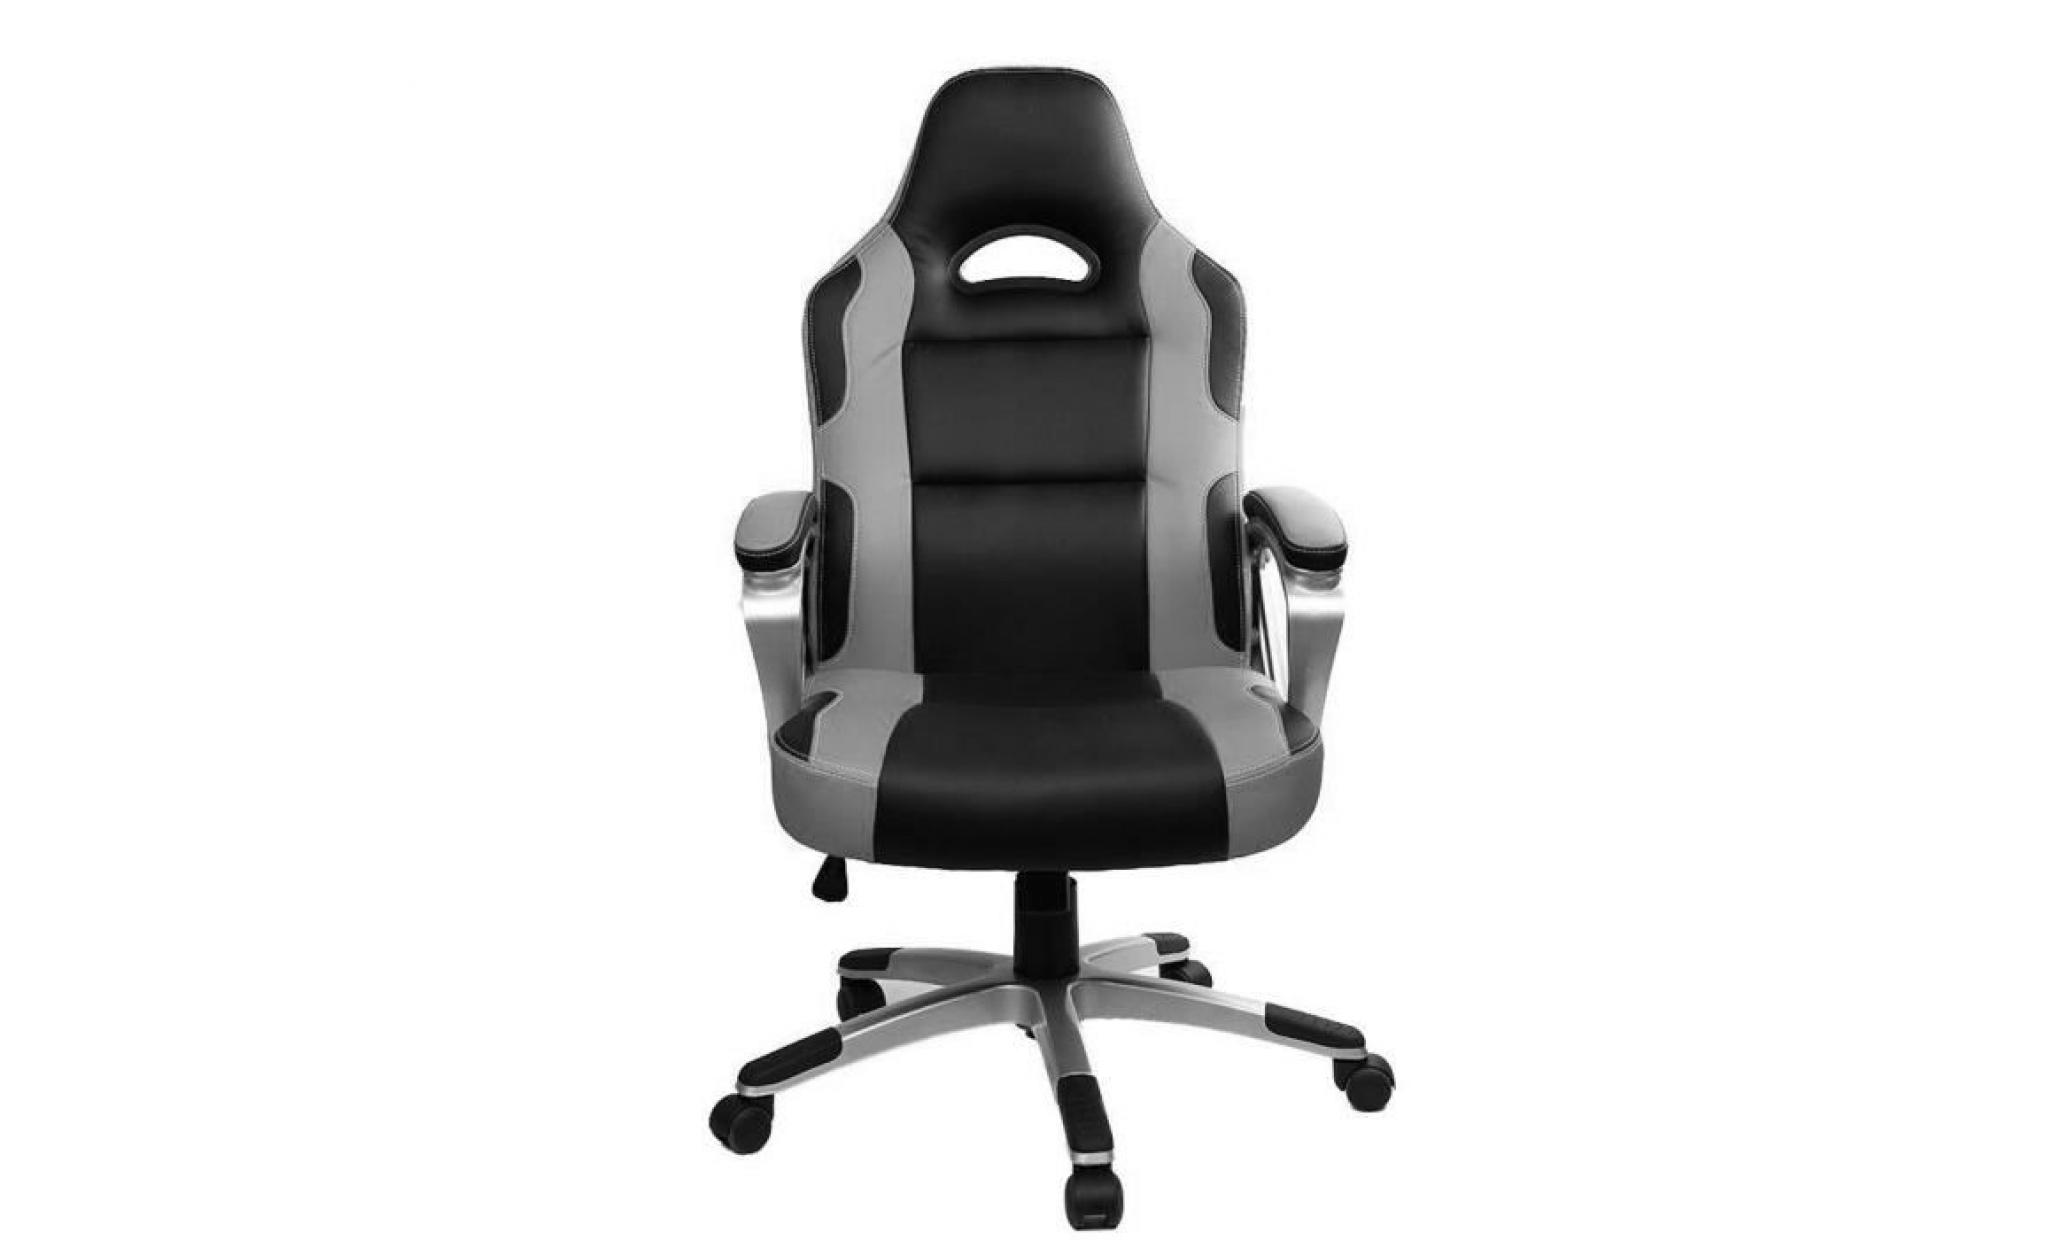 chaise gamer   racing chaise de bureau pu   gaming chaise   fauteuil de  bureau   hauteur réglable   vert / noir   intimate wm heat pas cher